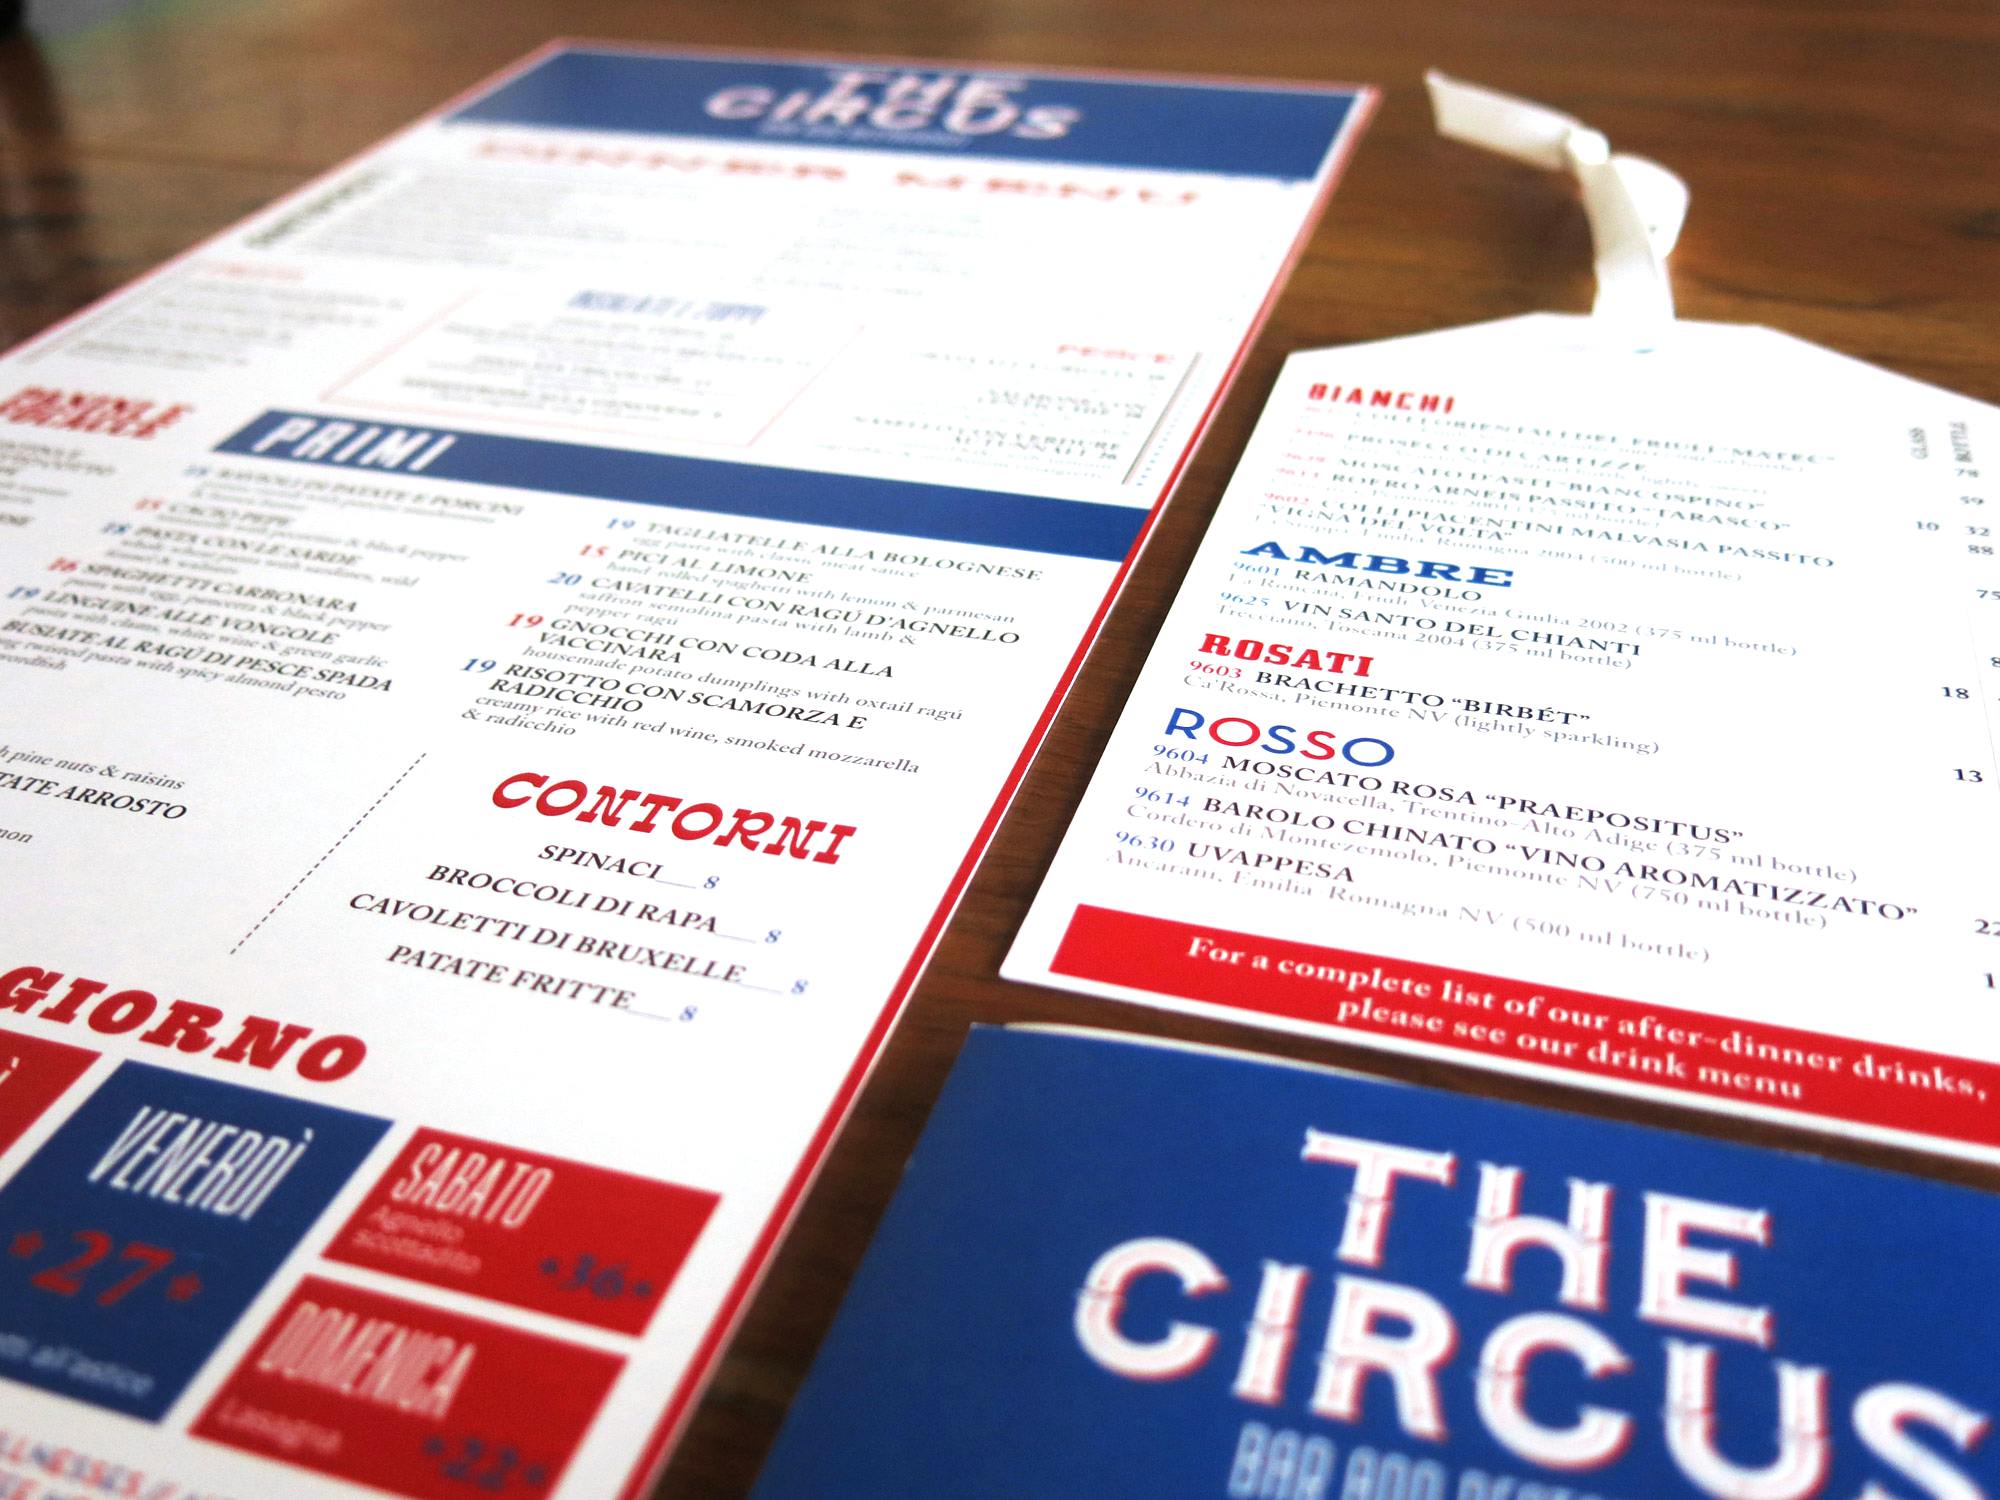 The Circus menus